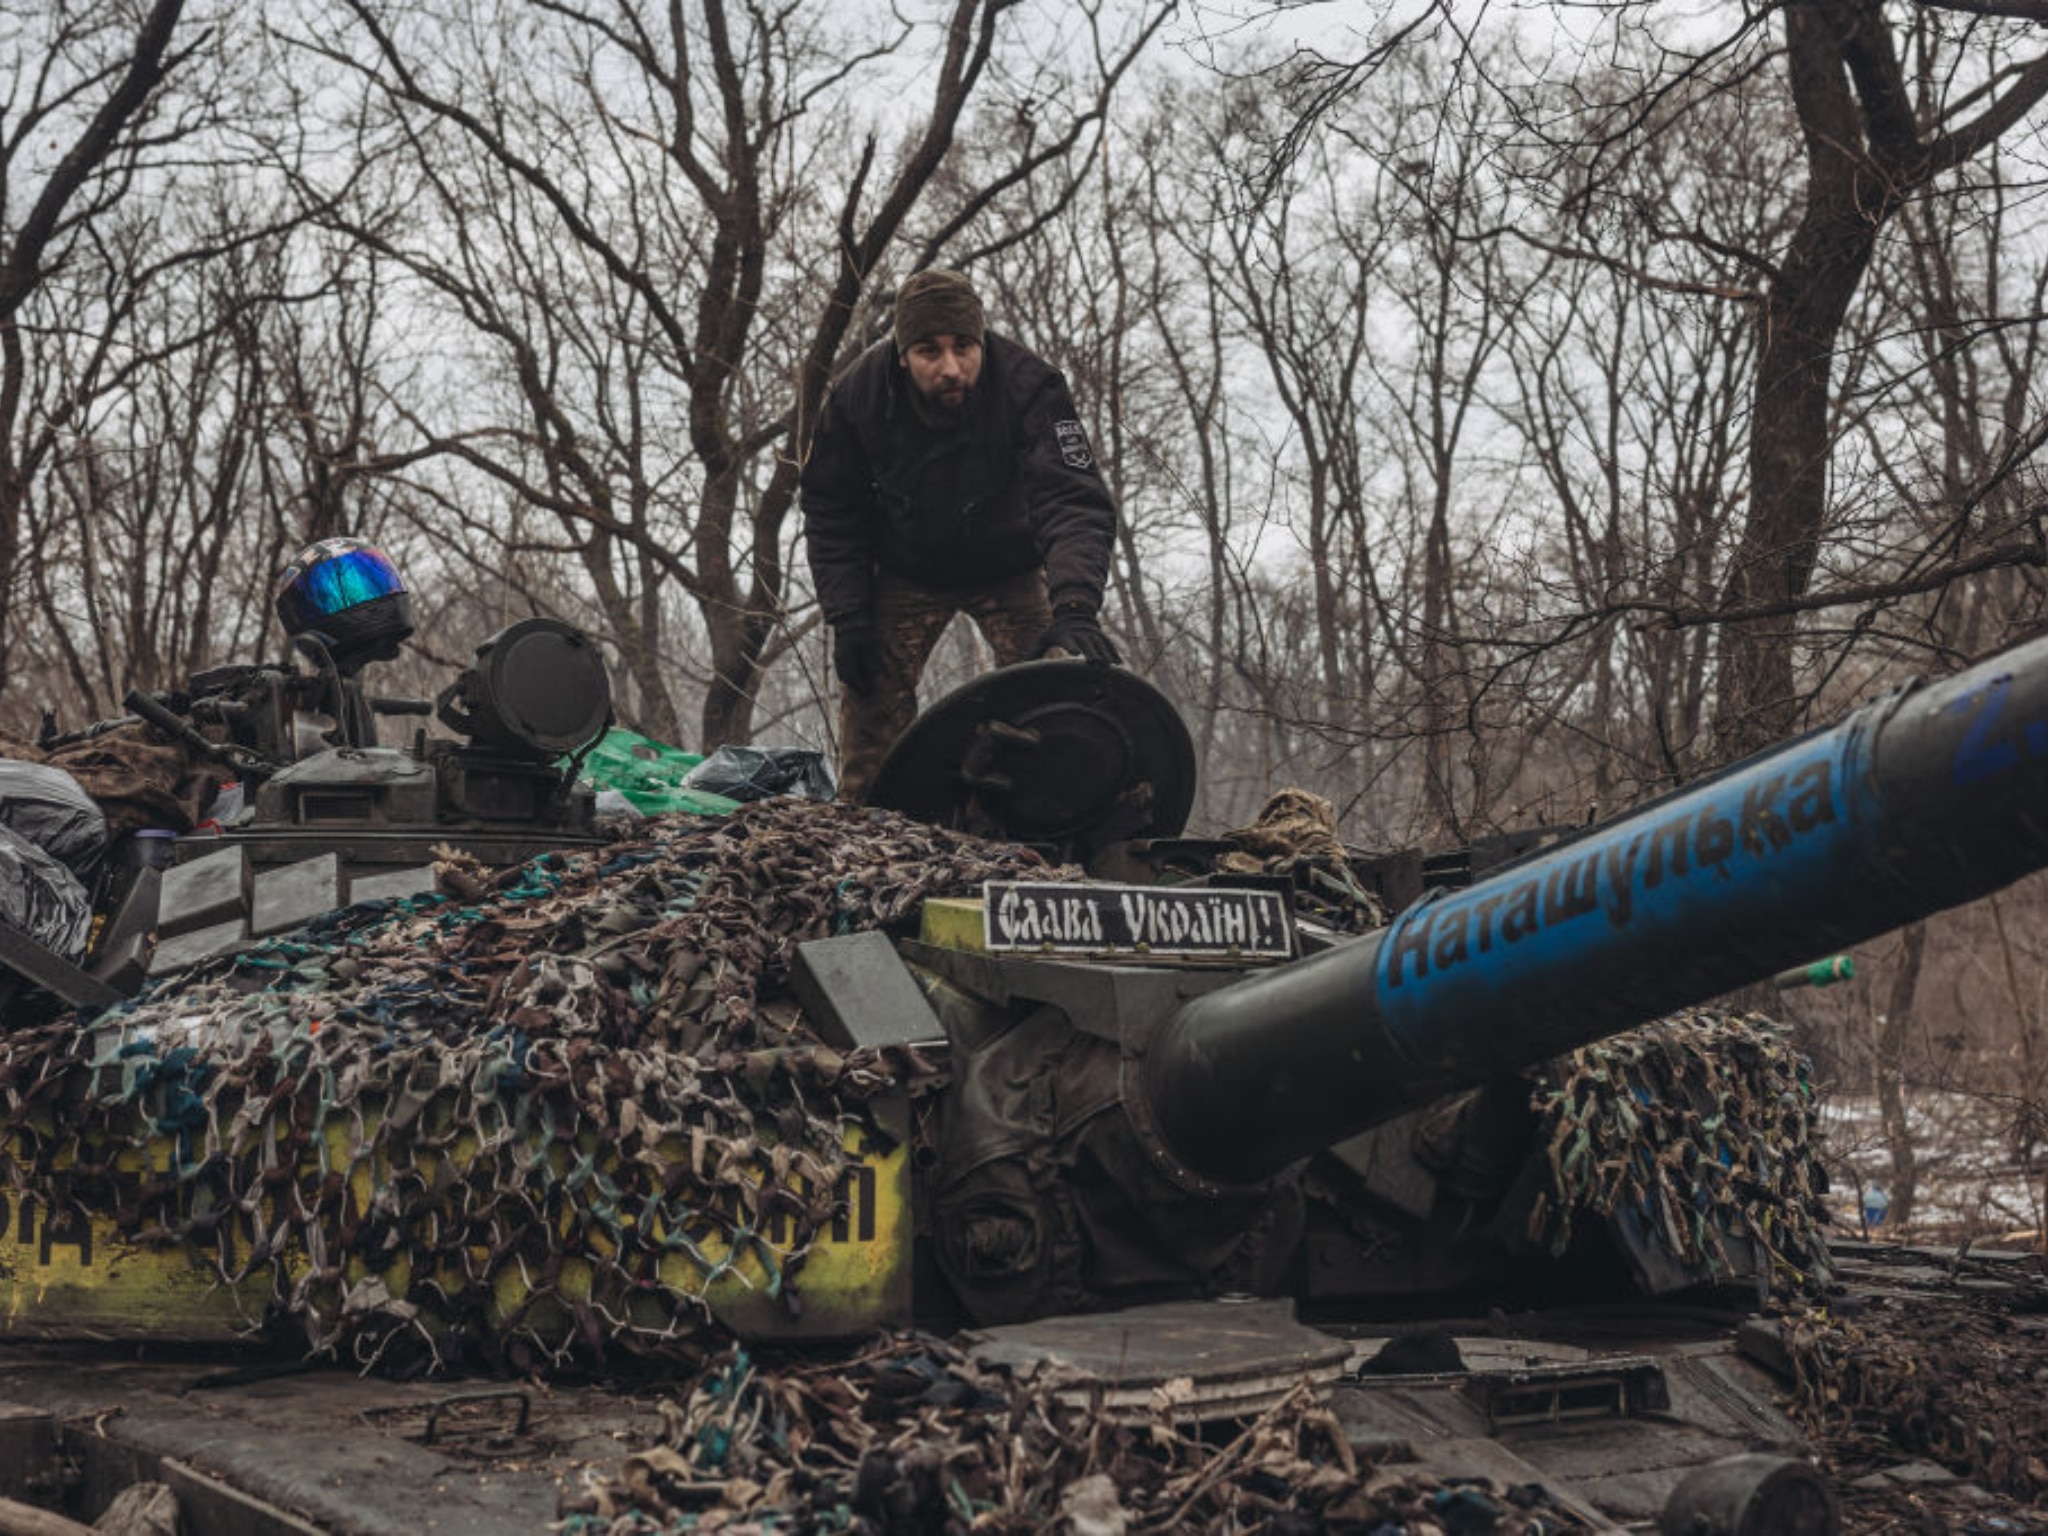 Guardian: Le consegne di carri armati in Ucraina significano guerra occidentale contro la Russia